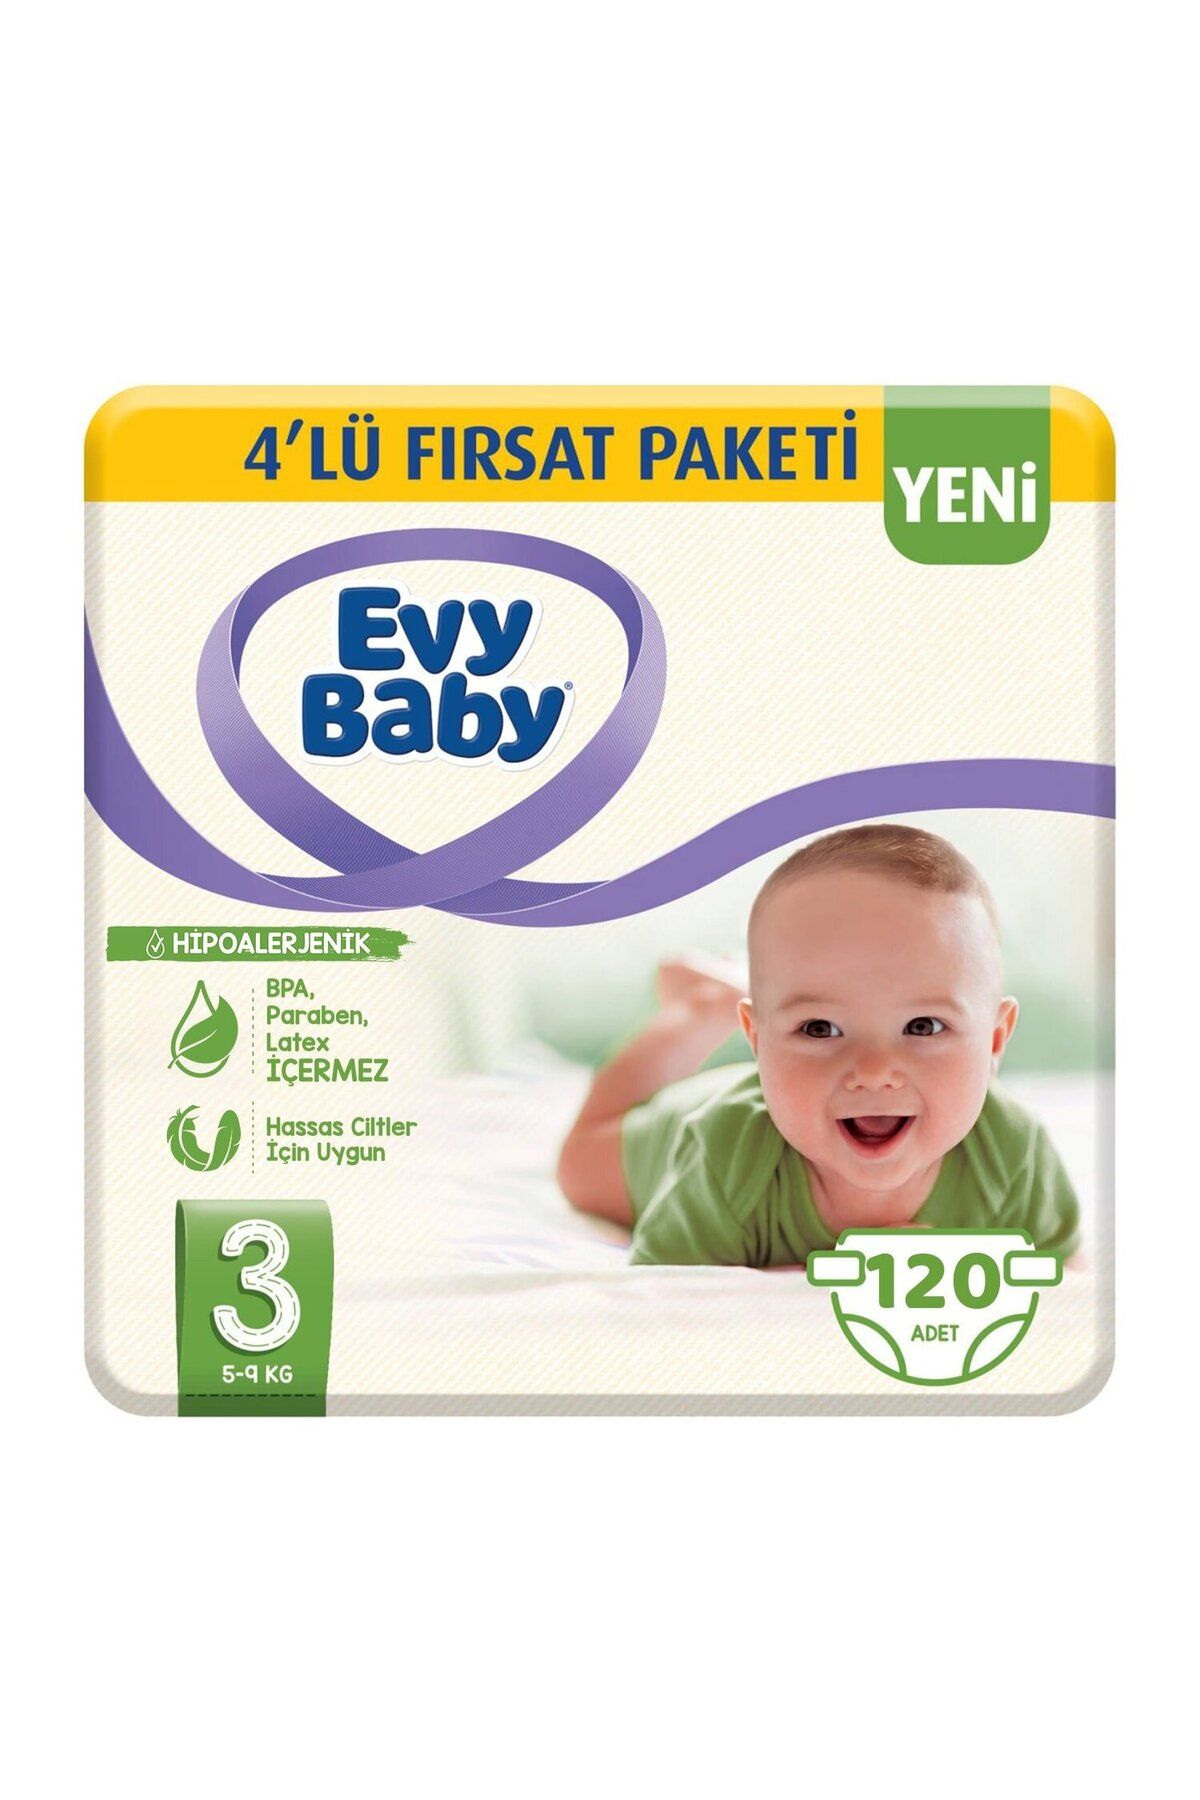 Evy Baby Bebek Bezi 3 Beden Midi 4'lü Fırsat Paketi 120 Adet (YENİ)